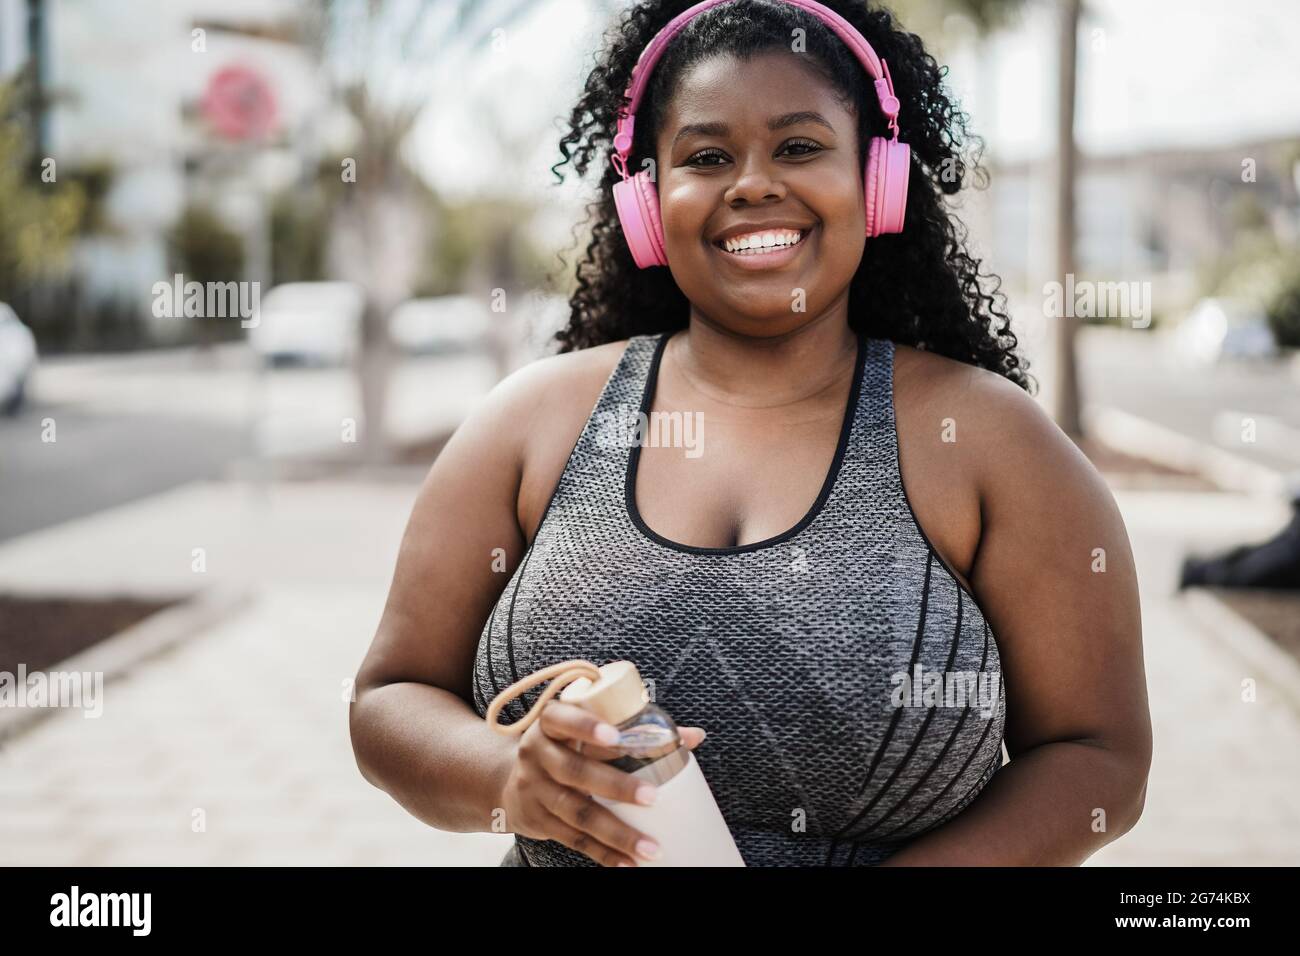 Sport kurvige schwarze Frau Musik hören mit Kopfhörern - Fokus auf Gesicht Stockfoto